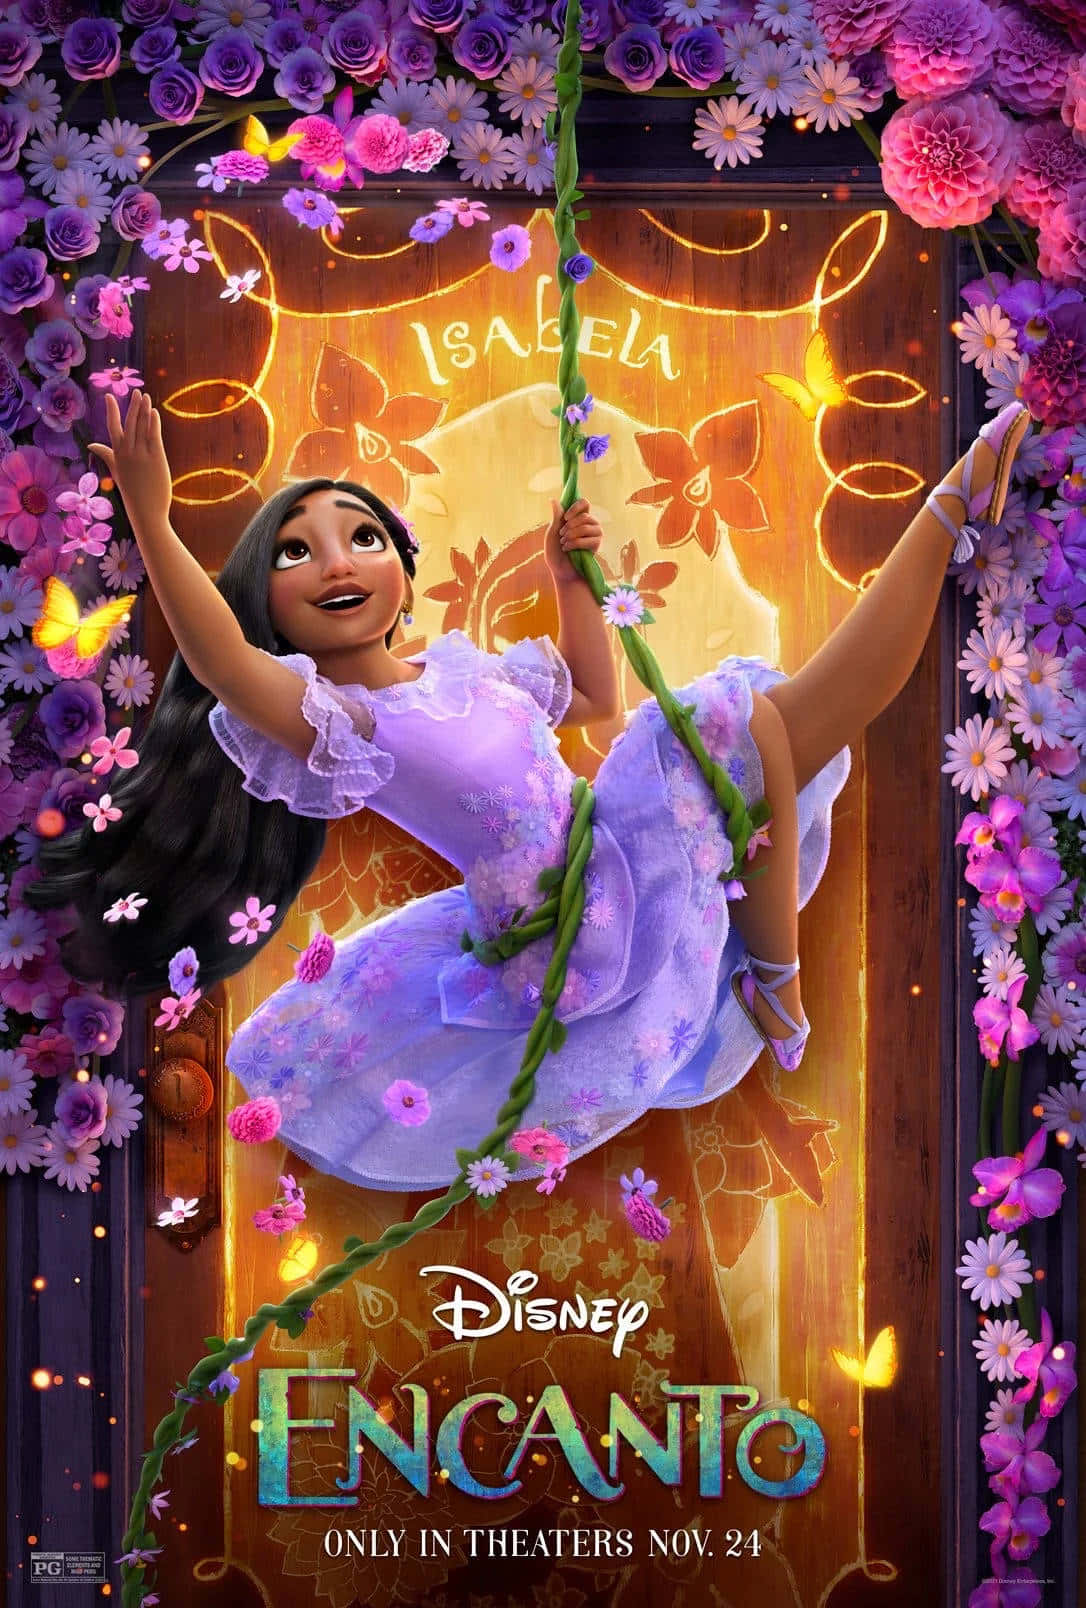 Disneyencanto Plakat Mit Einem Mädchen In Einem Lila Kleid.